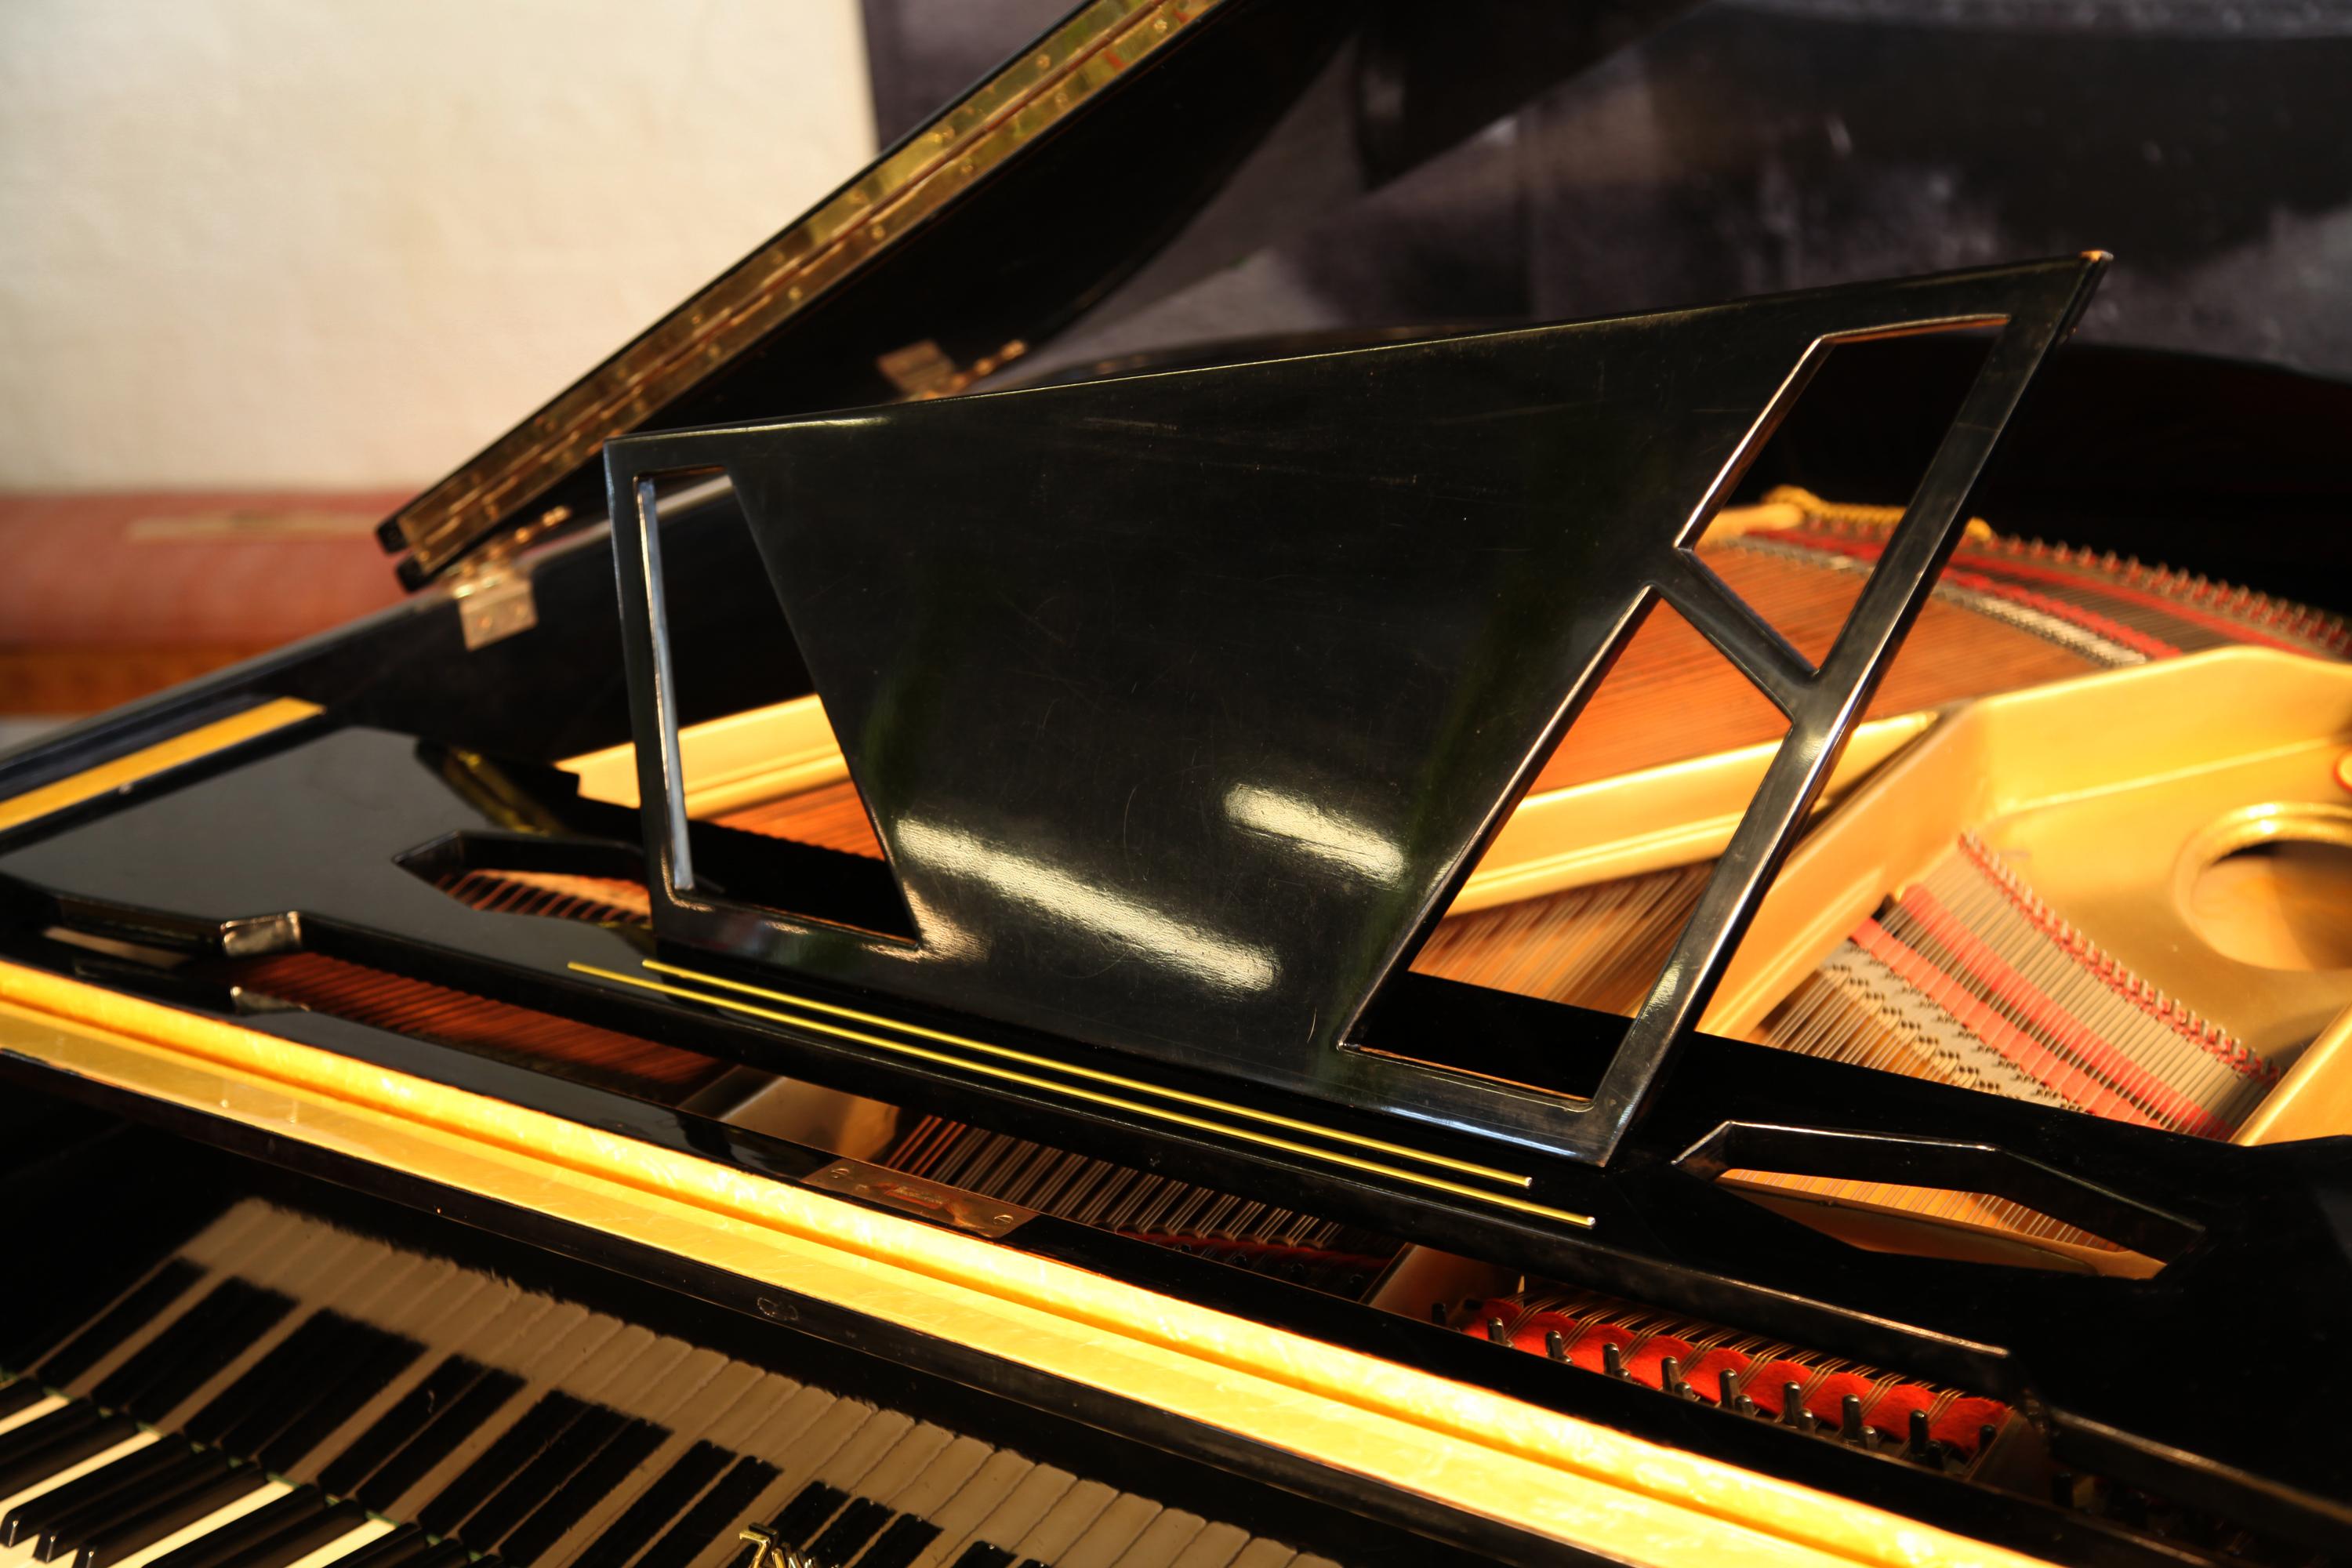 Piano à queue Zimmermann de style années 1950, avec un boîtier en formica noir et jaune contrastant. Le piano présente un pupitre asymétrique avec des découpes géométriques. 
Le style angulaire est présent dans tout le design de l'armoire. Les